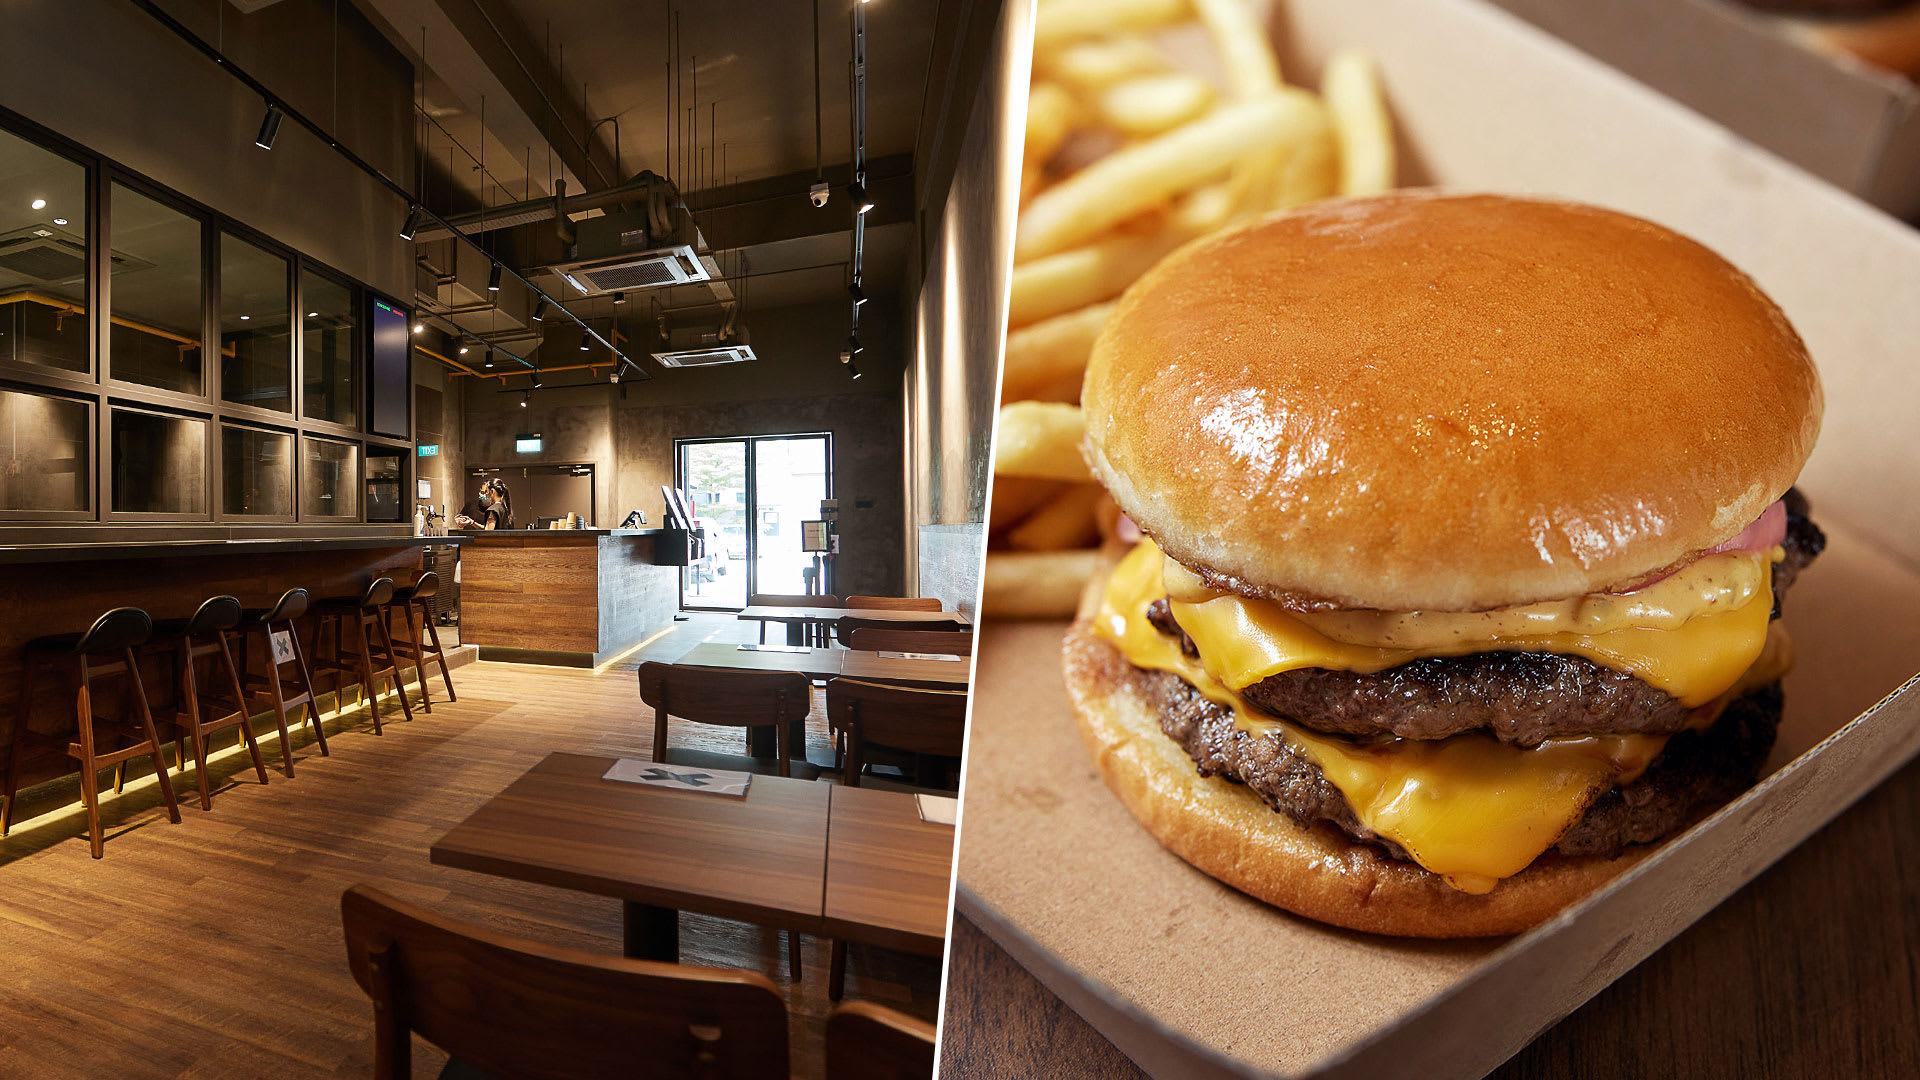 Naked Finn Boss Opens New Eatery With $9.50 Nett Gourmet Cheeseburger